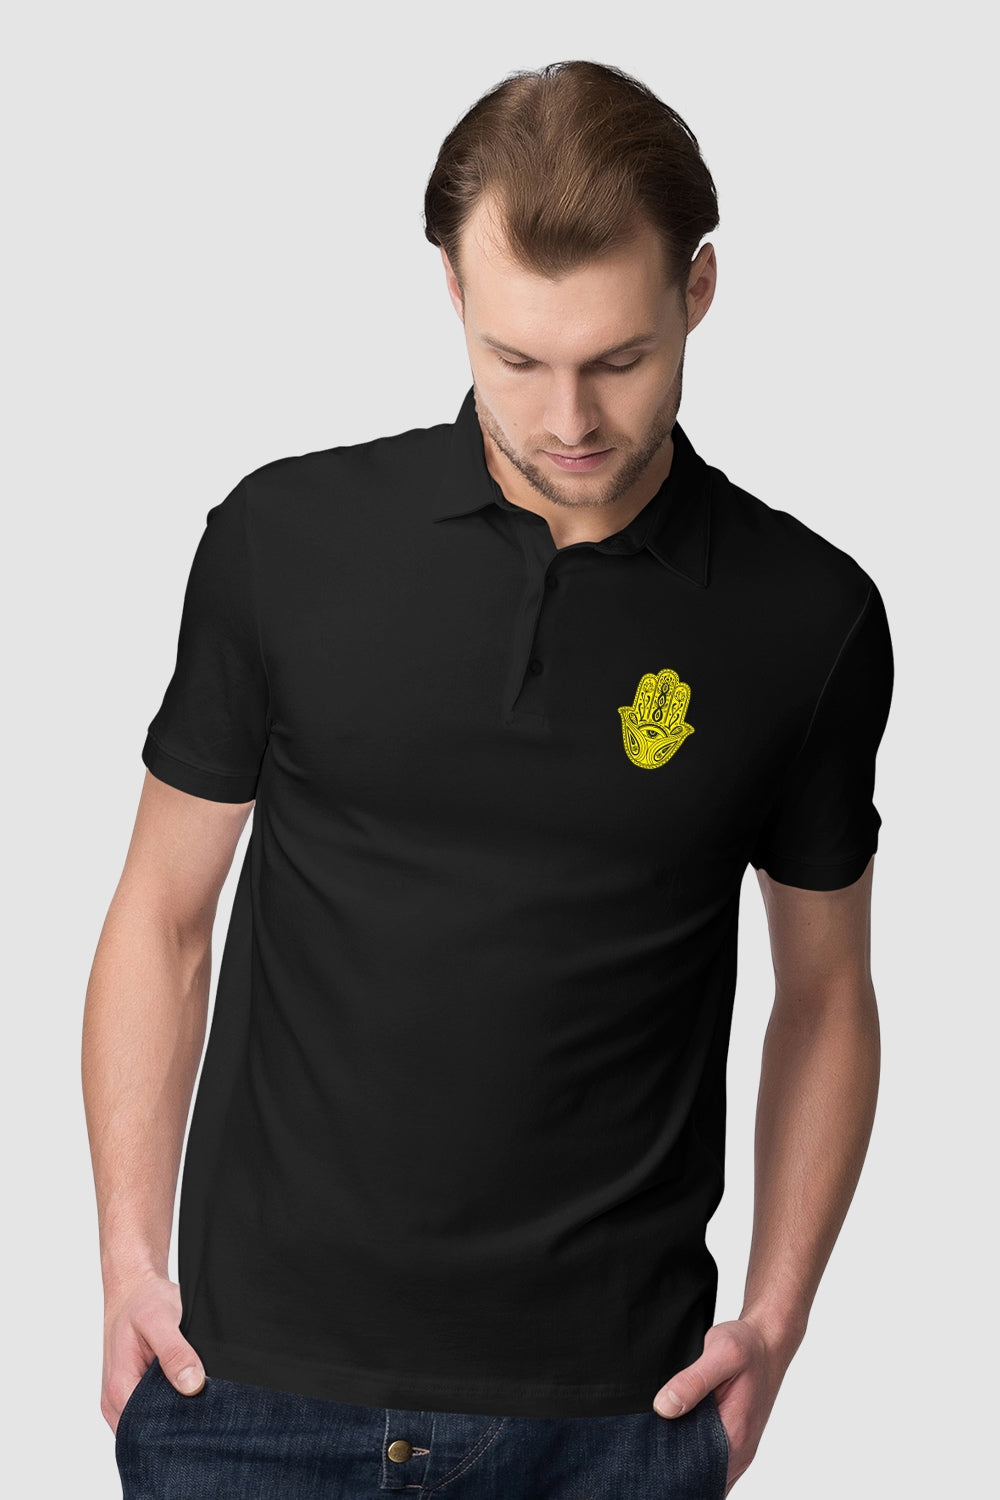 Hand Art Pocket Printed Black Polo Tshirt